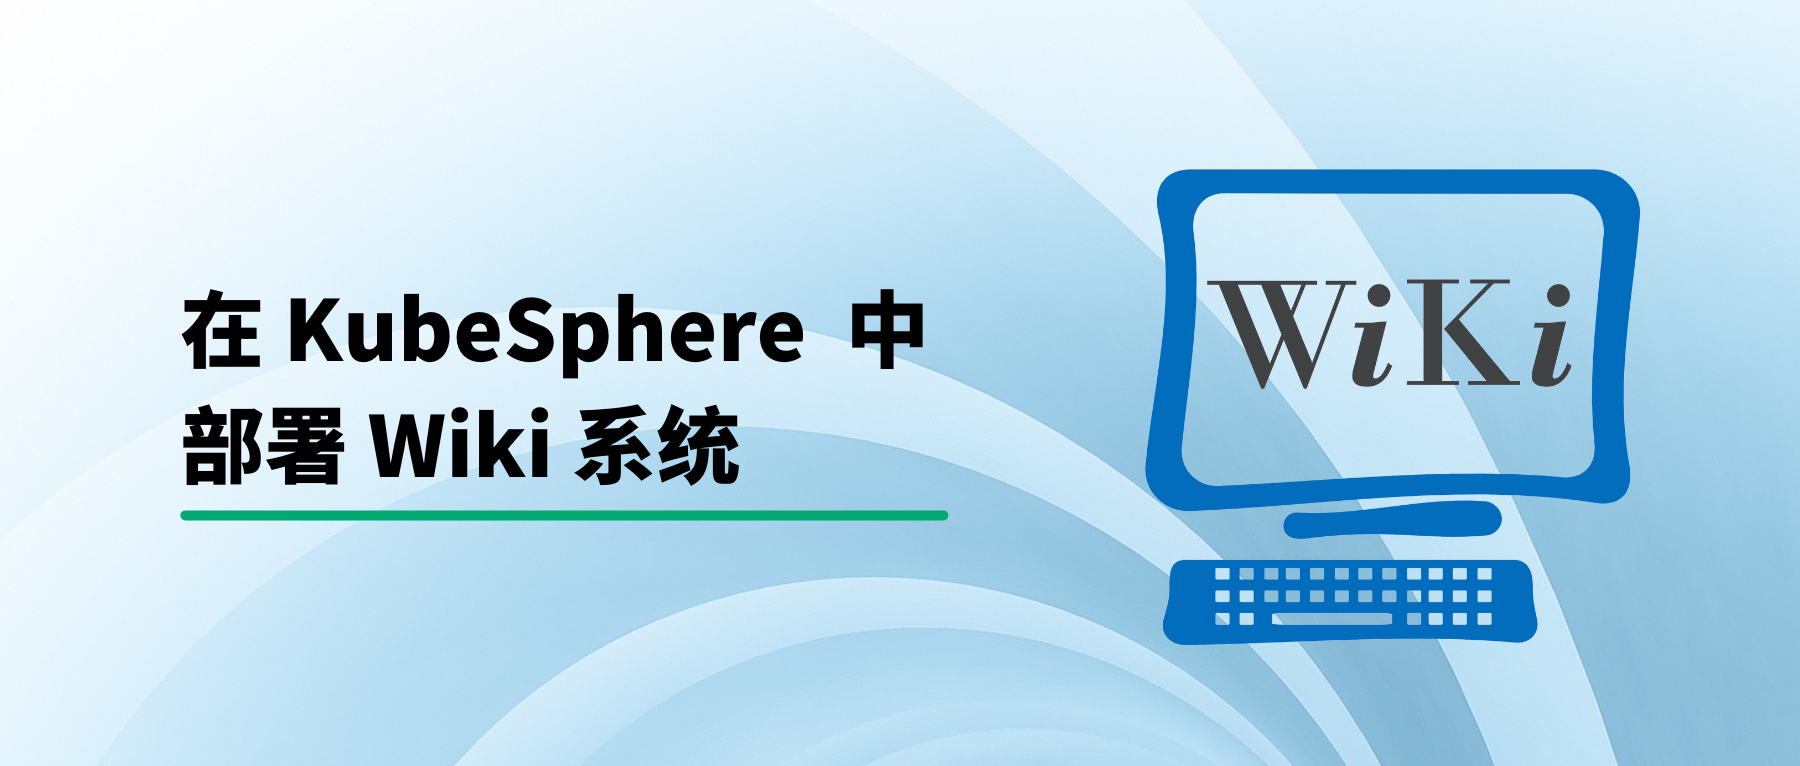 在 KubeSphere 部署 Wiki 系统 wiki.js 并启用中文全文检索